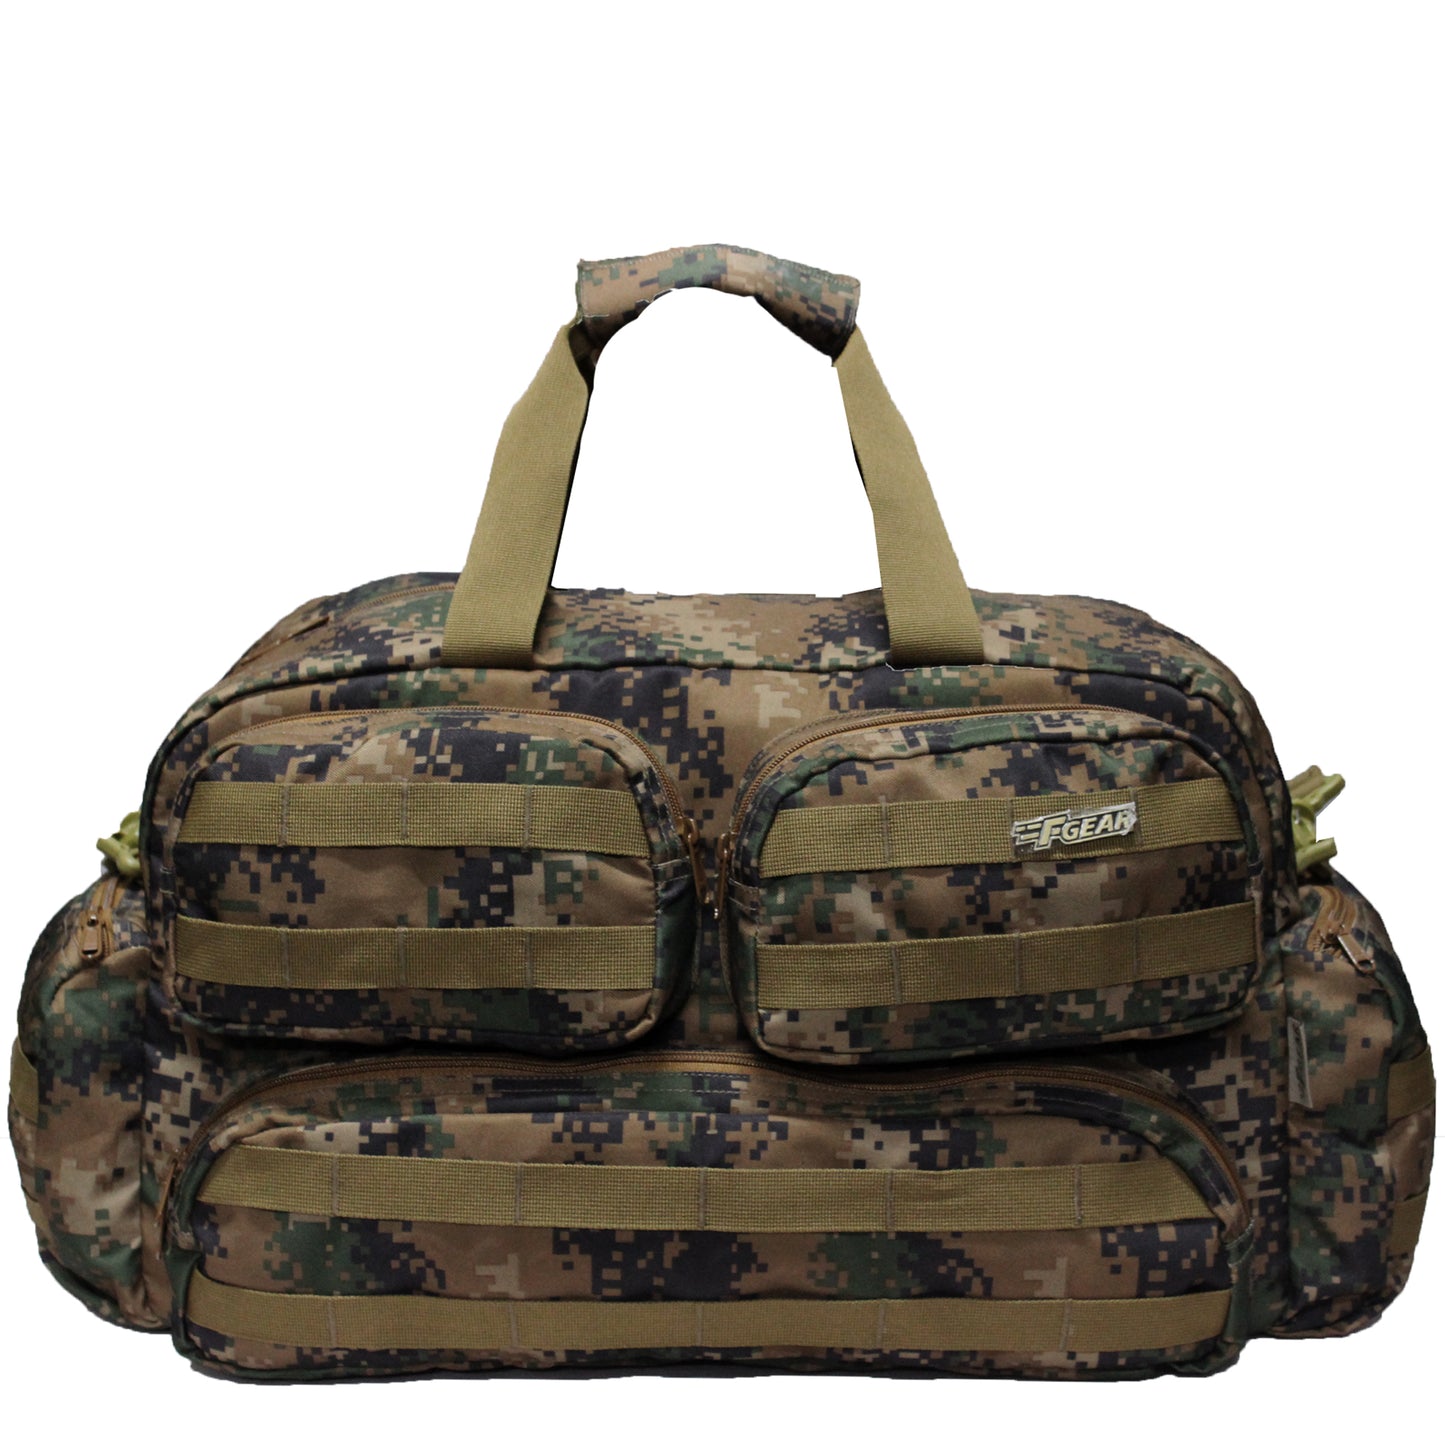 Skyler 48L Marpat WL Travel Duffel Bag